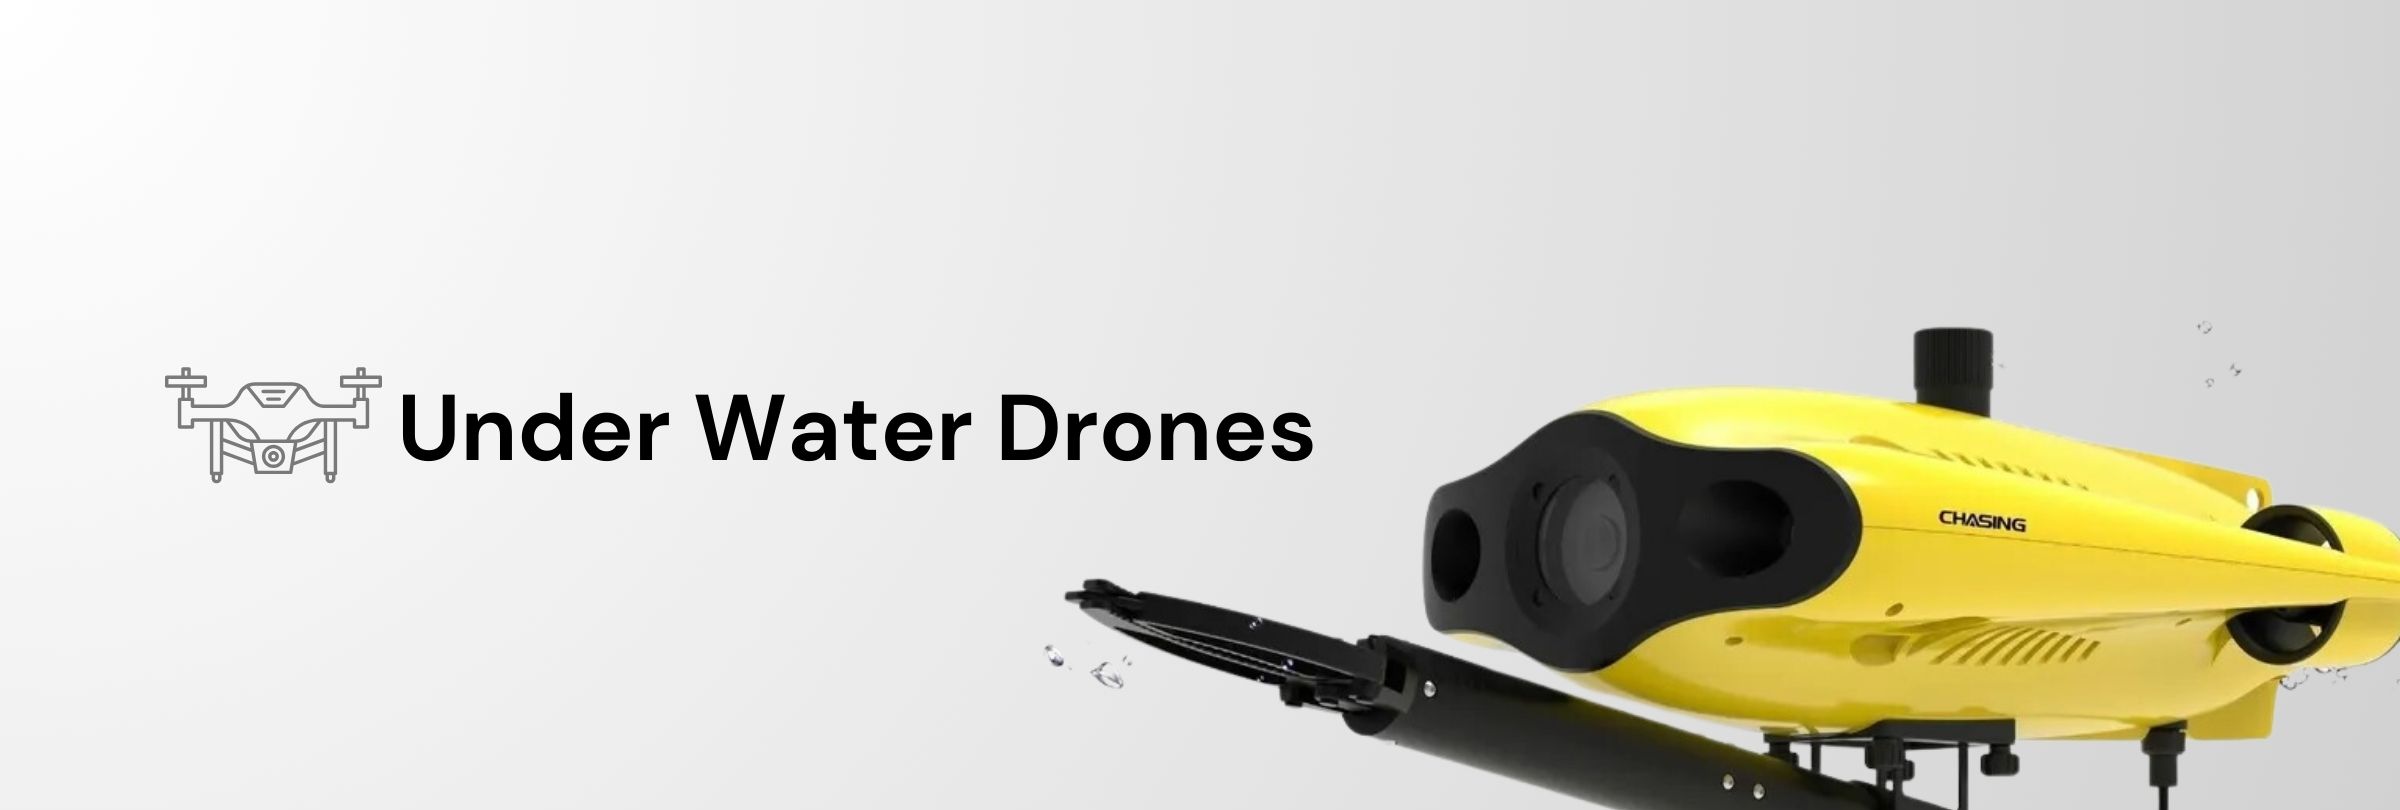 Under Water Drones